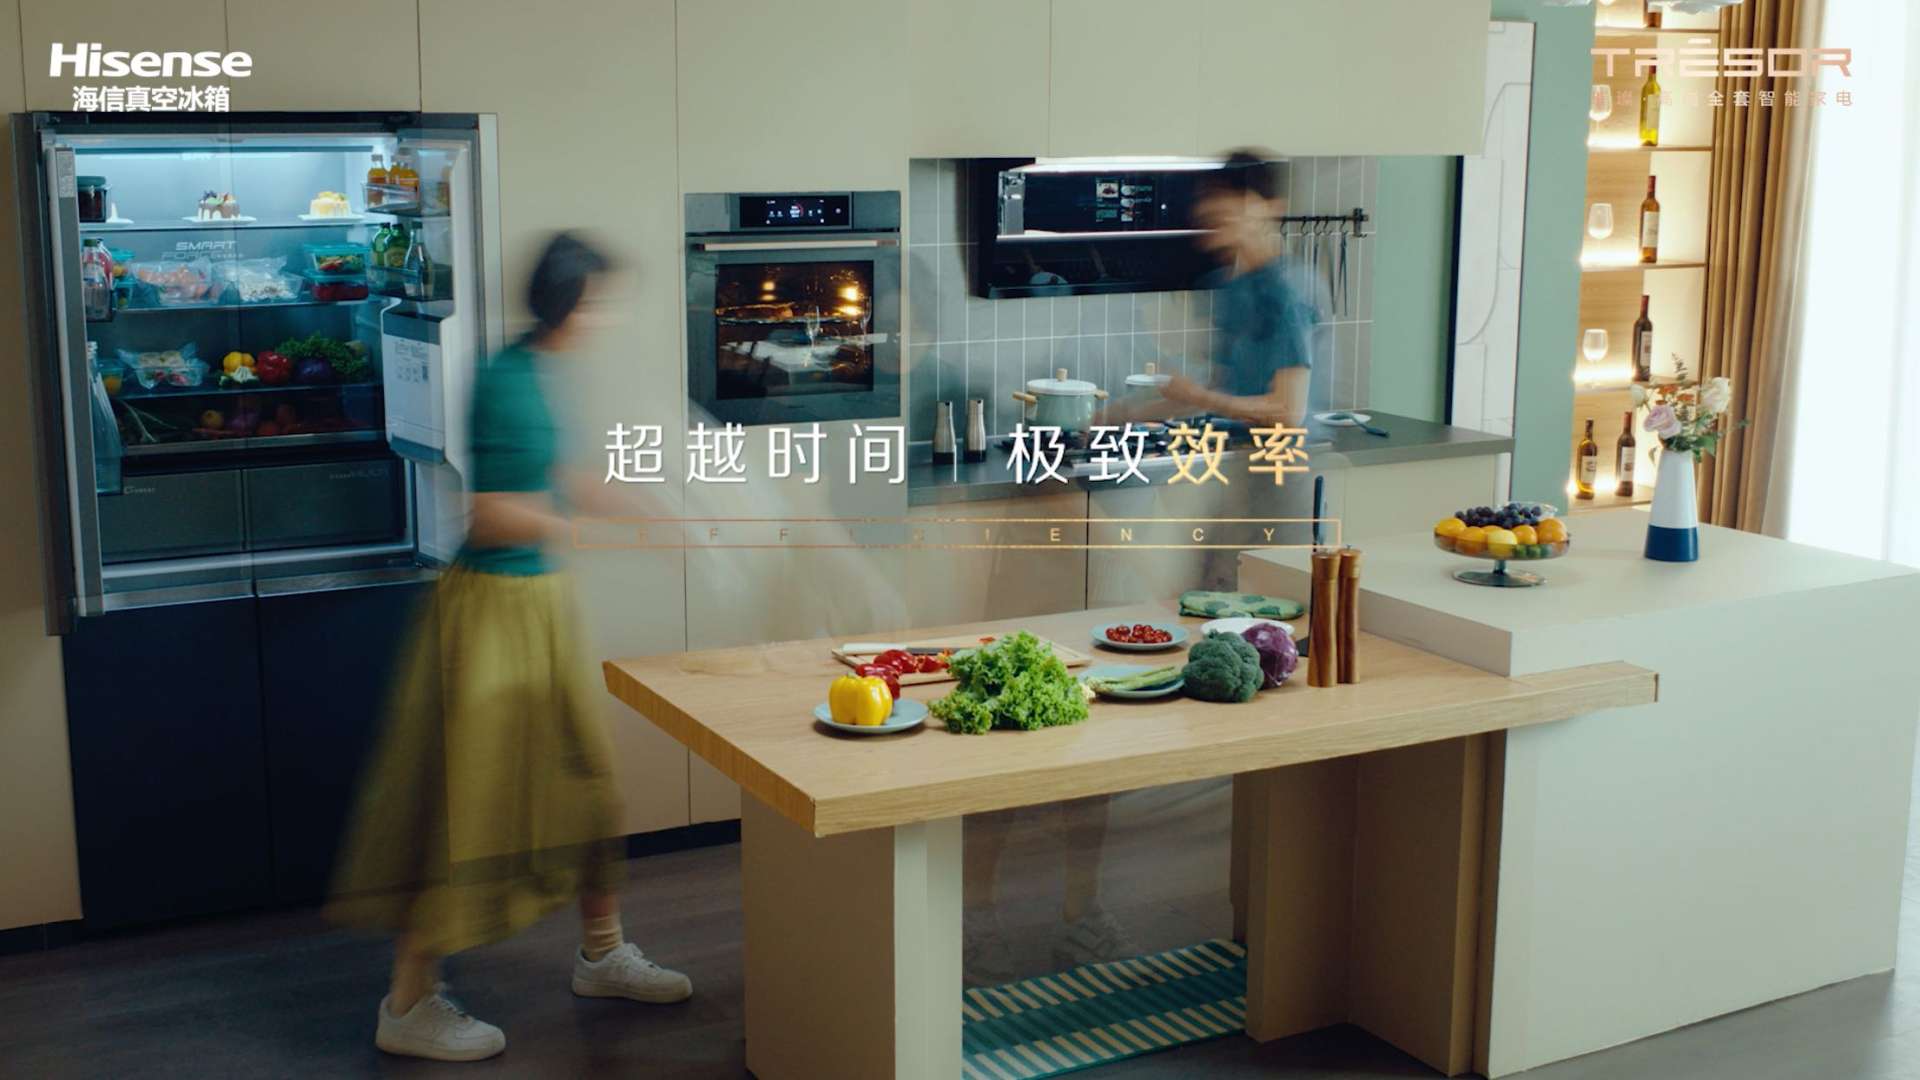 海信真空冰箱广告片——携手cctv3《一馔千年》